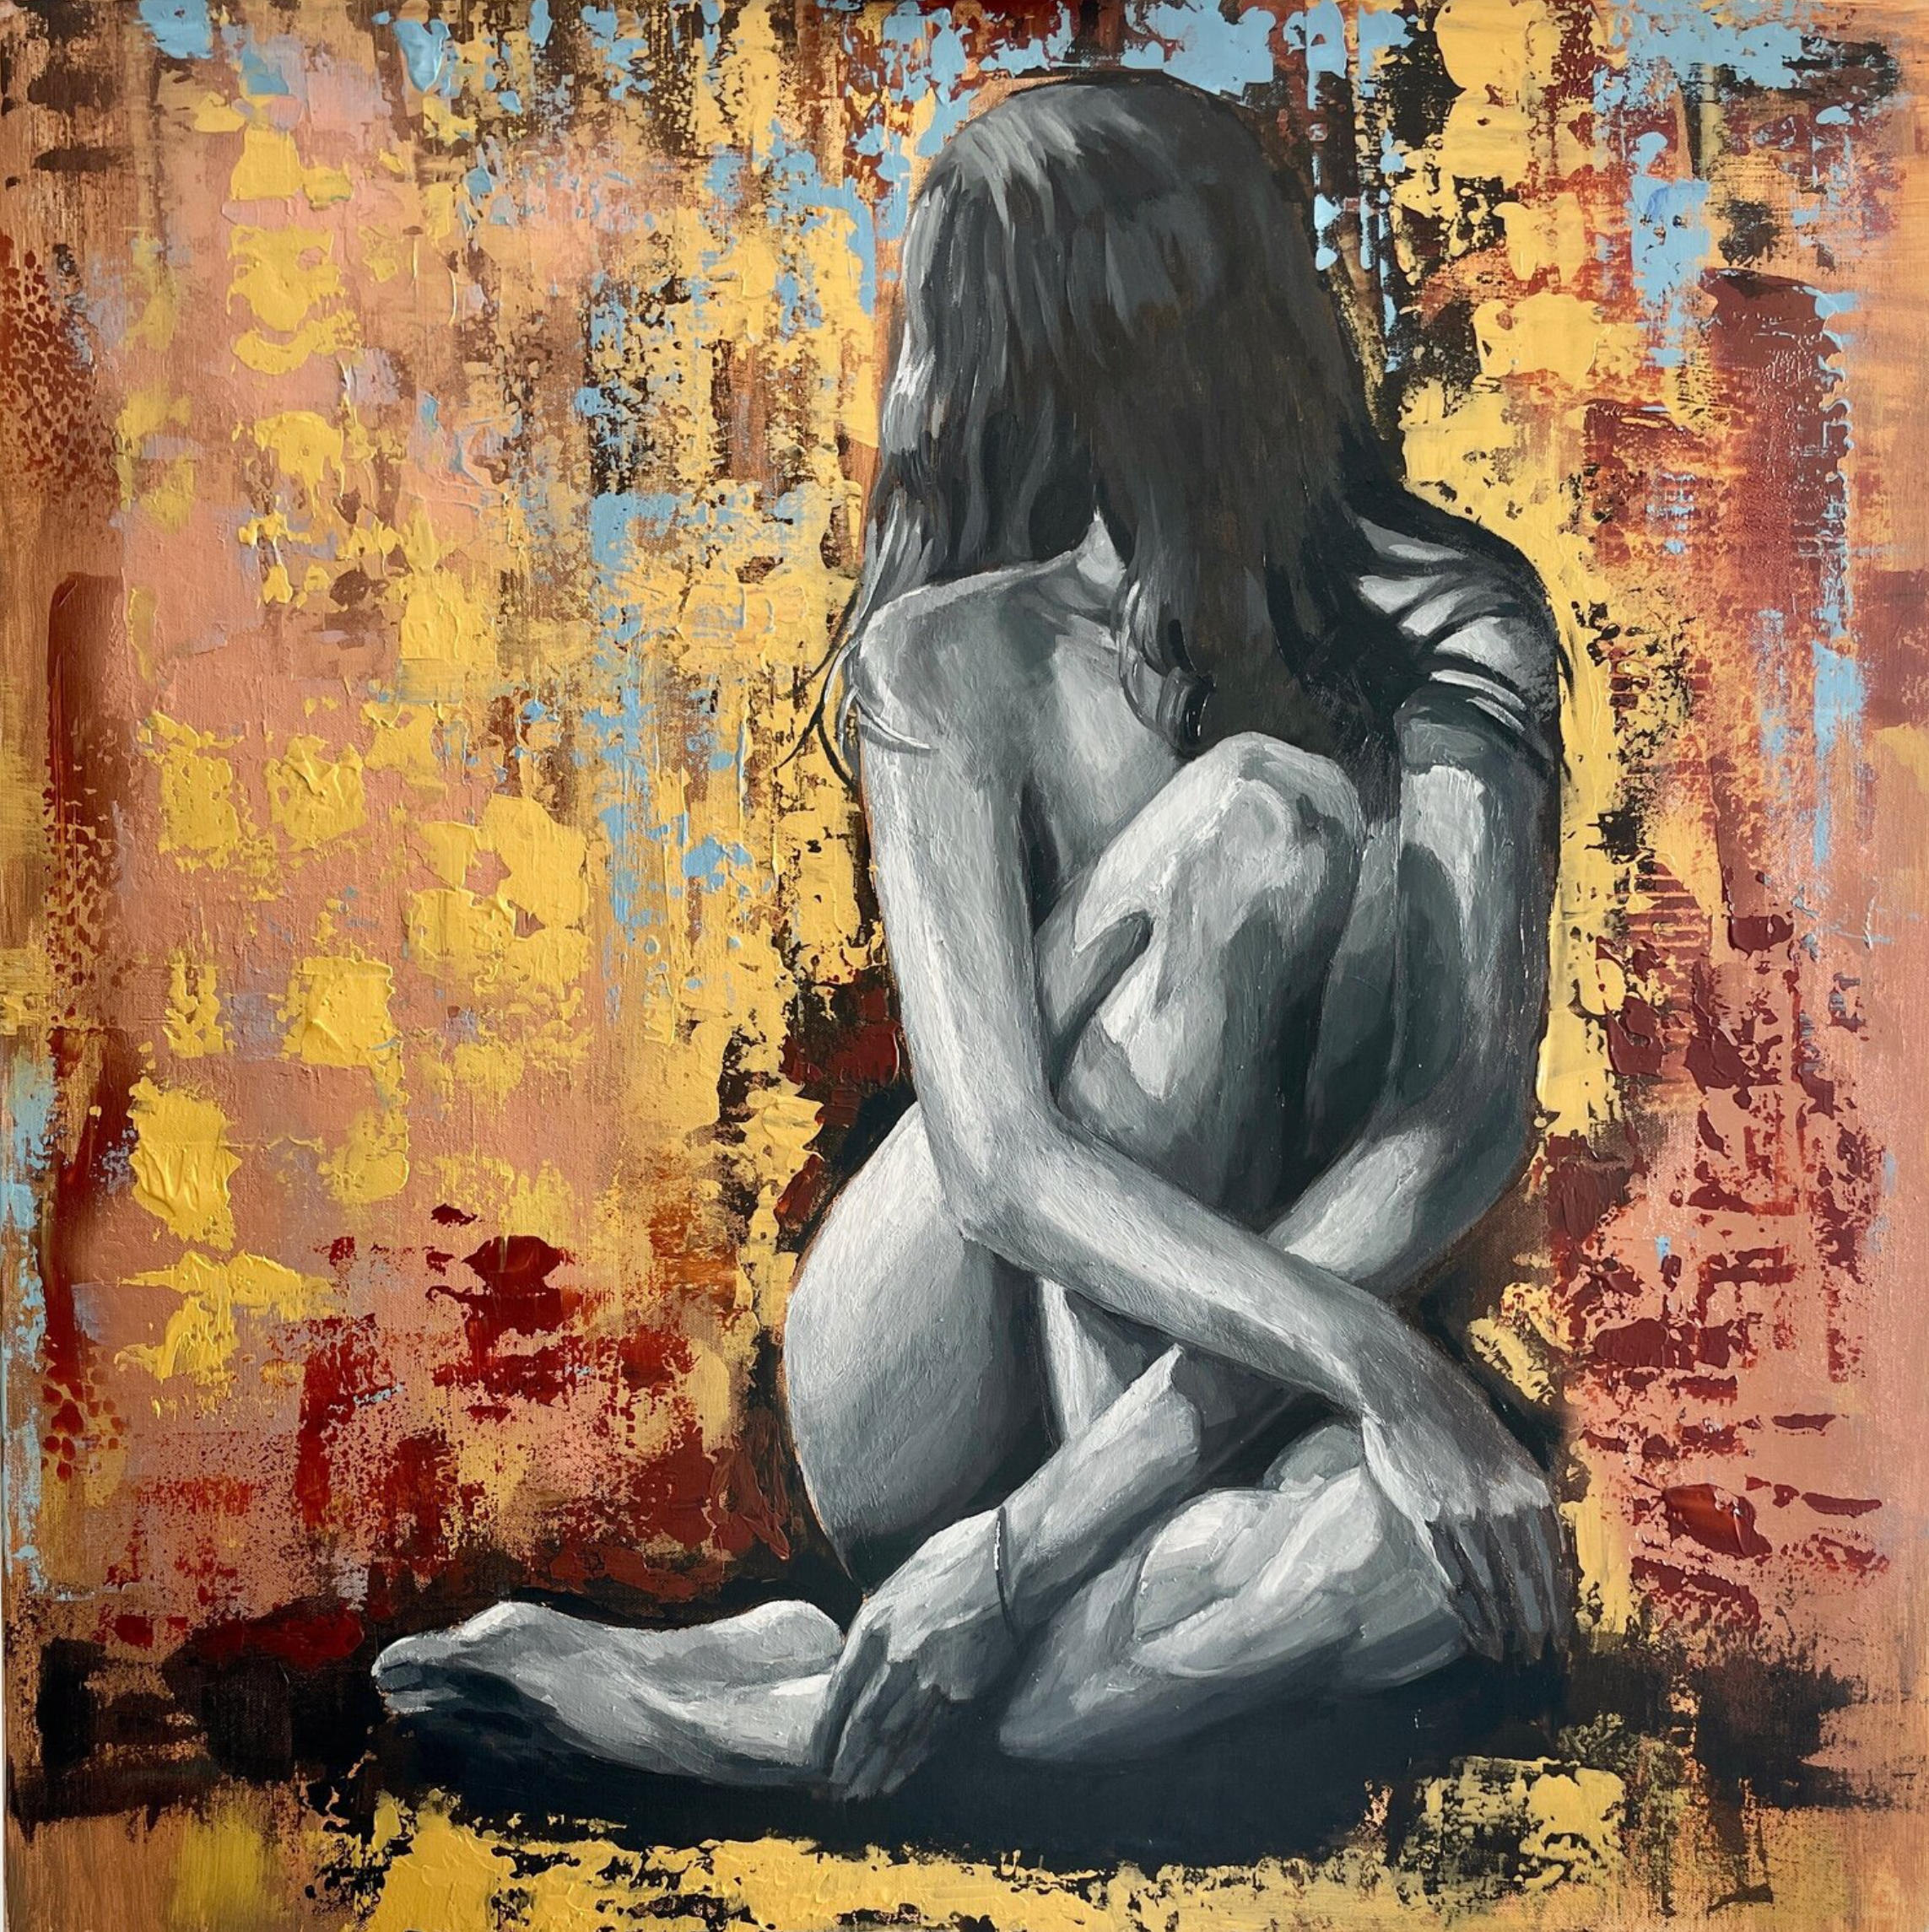 Sunny Day" d'Anna Reznikova montre un tableau de nus, une jolie femme assise devant un mur coloré.